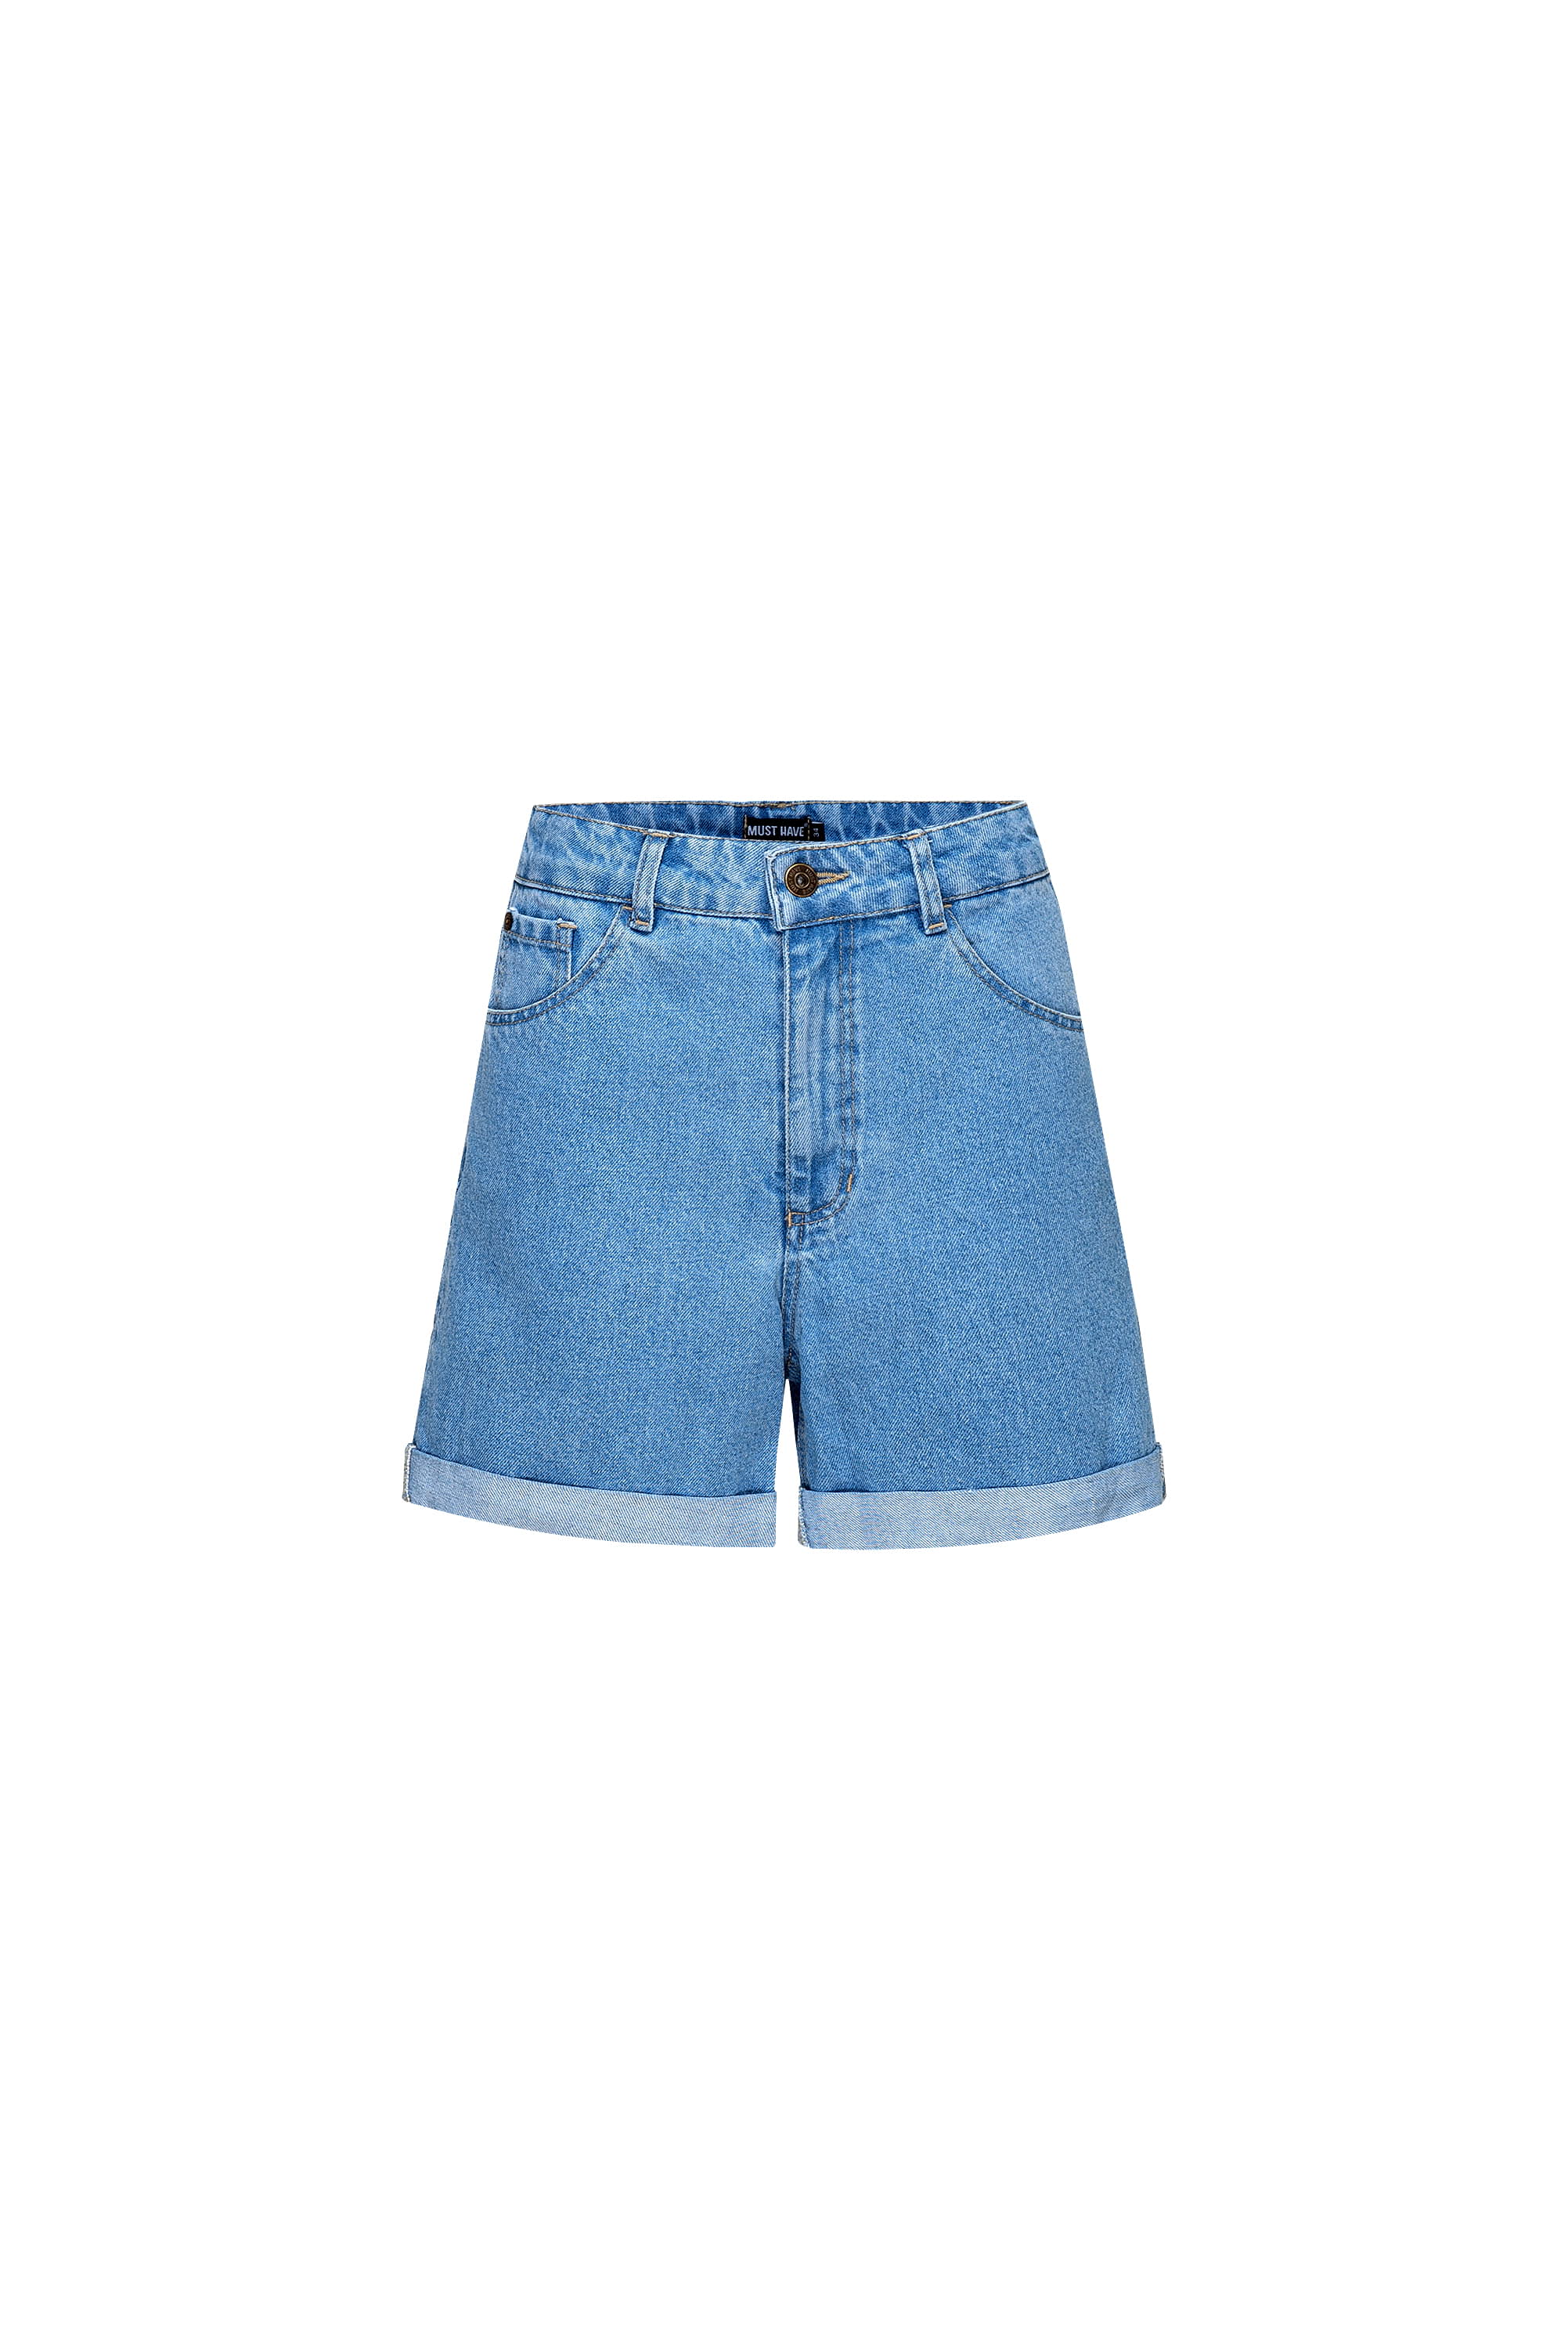 Blue denim shorts, photo 7